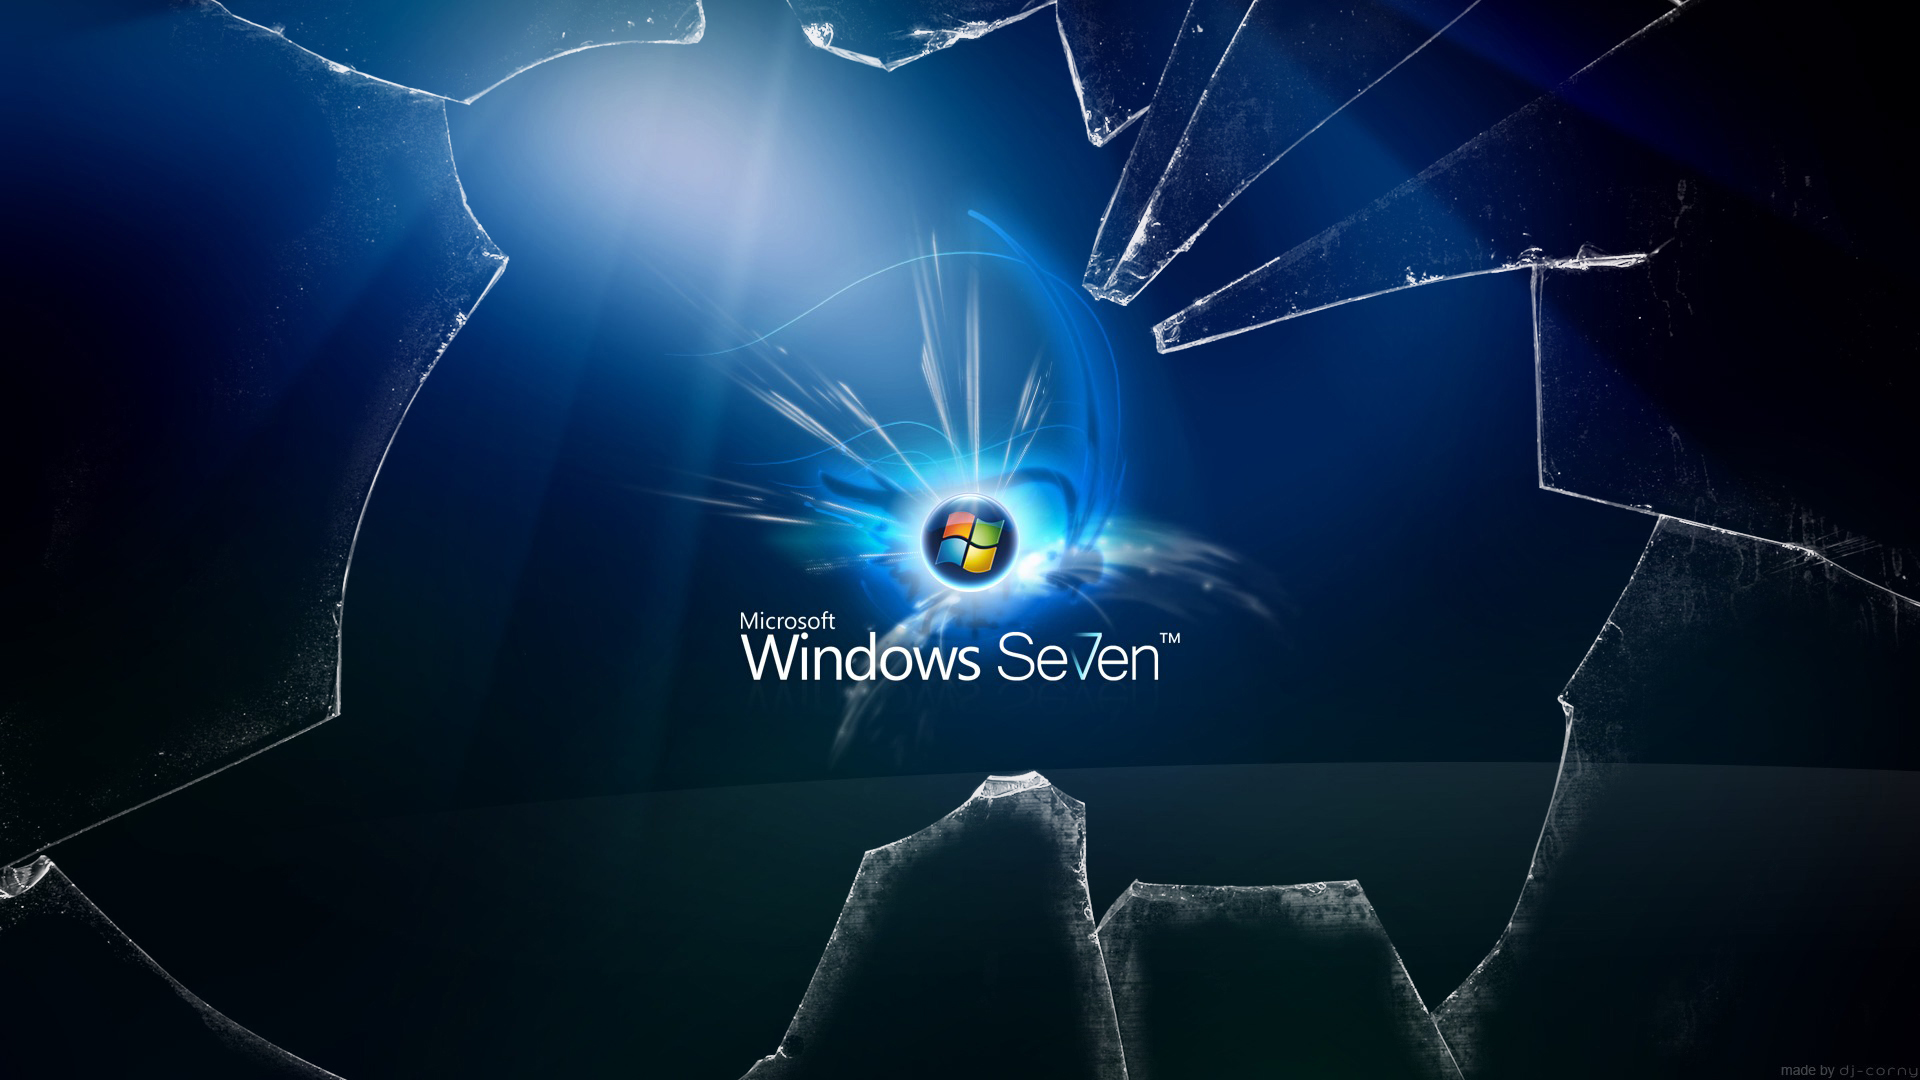 Windows 7, broken screen - desktop wallpaper